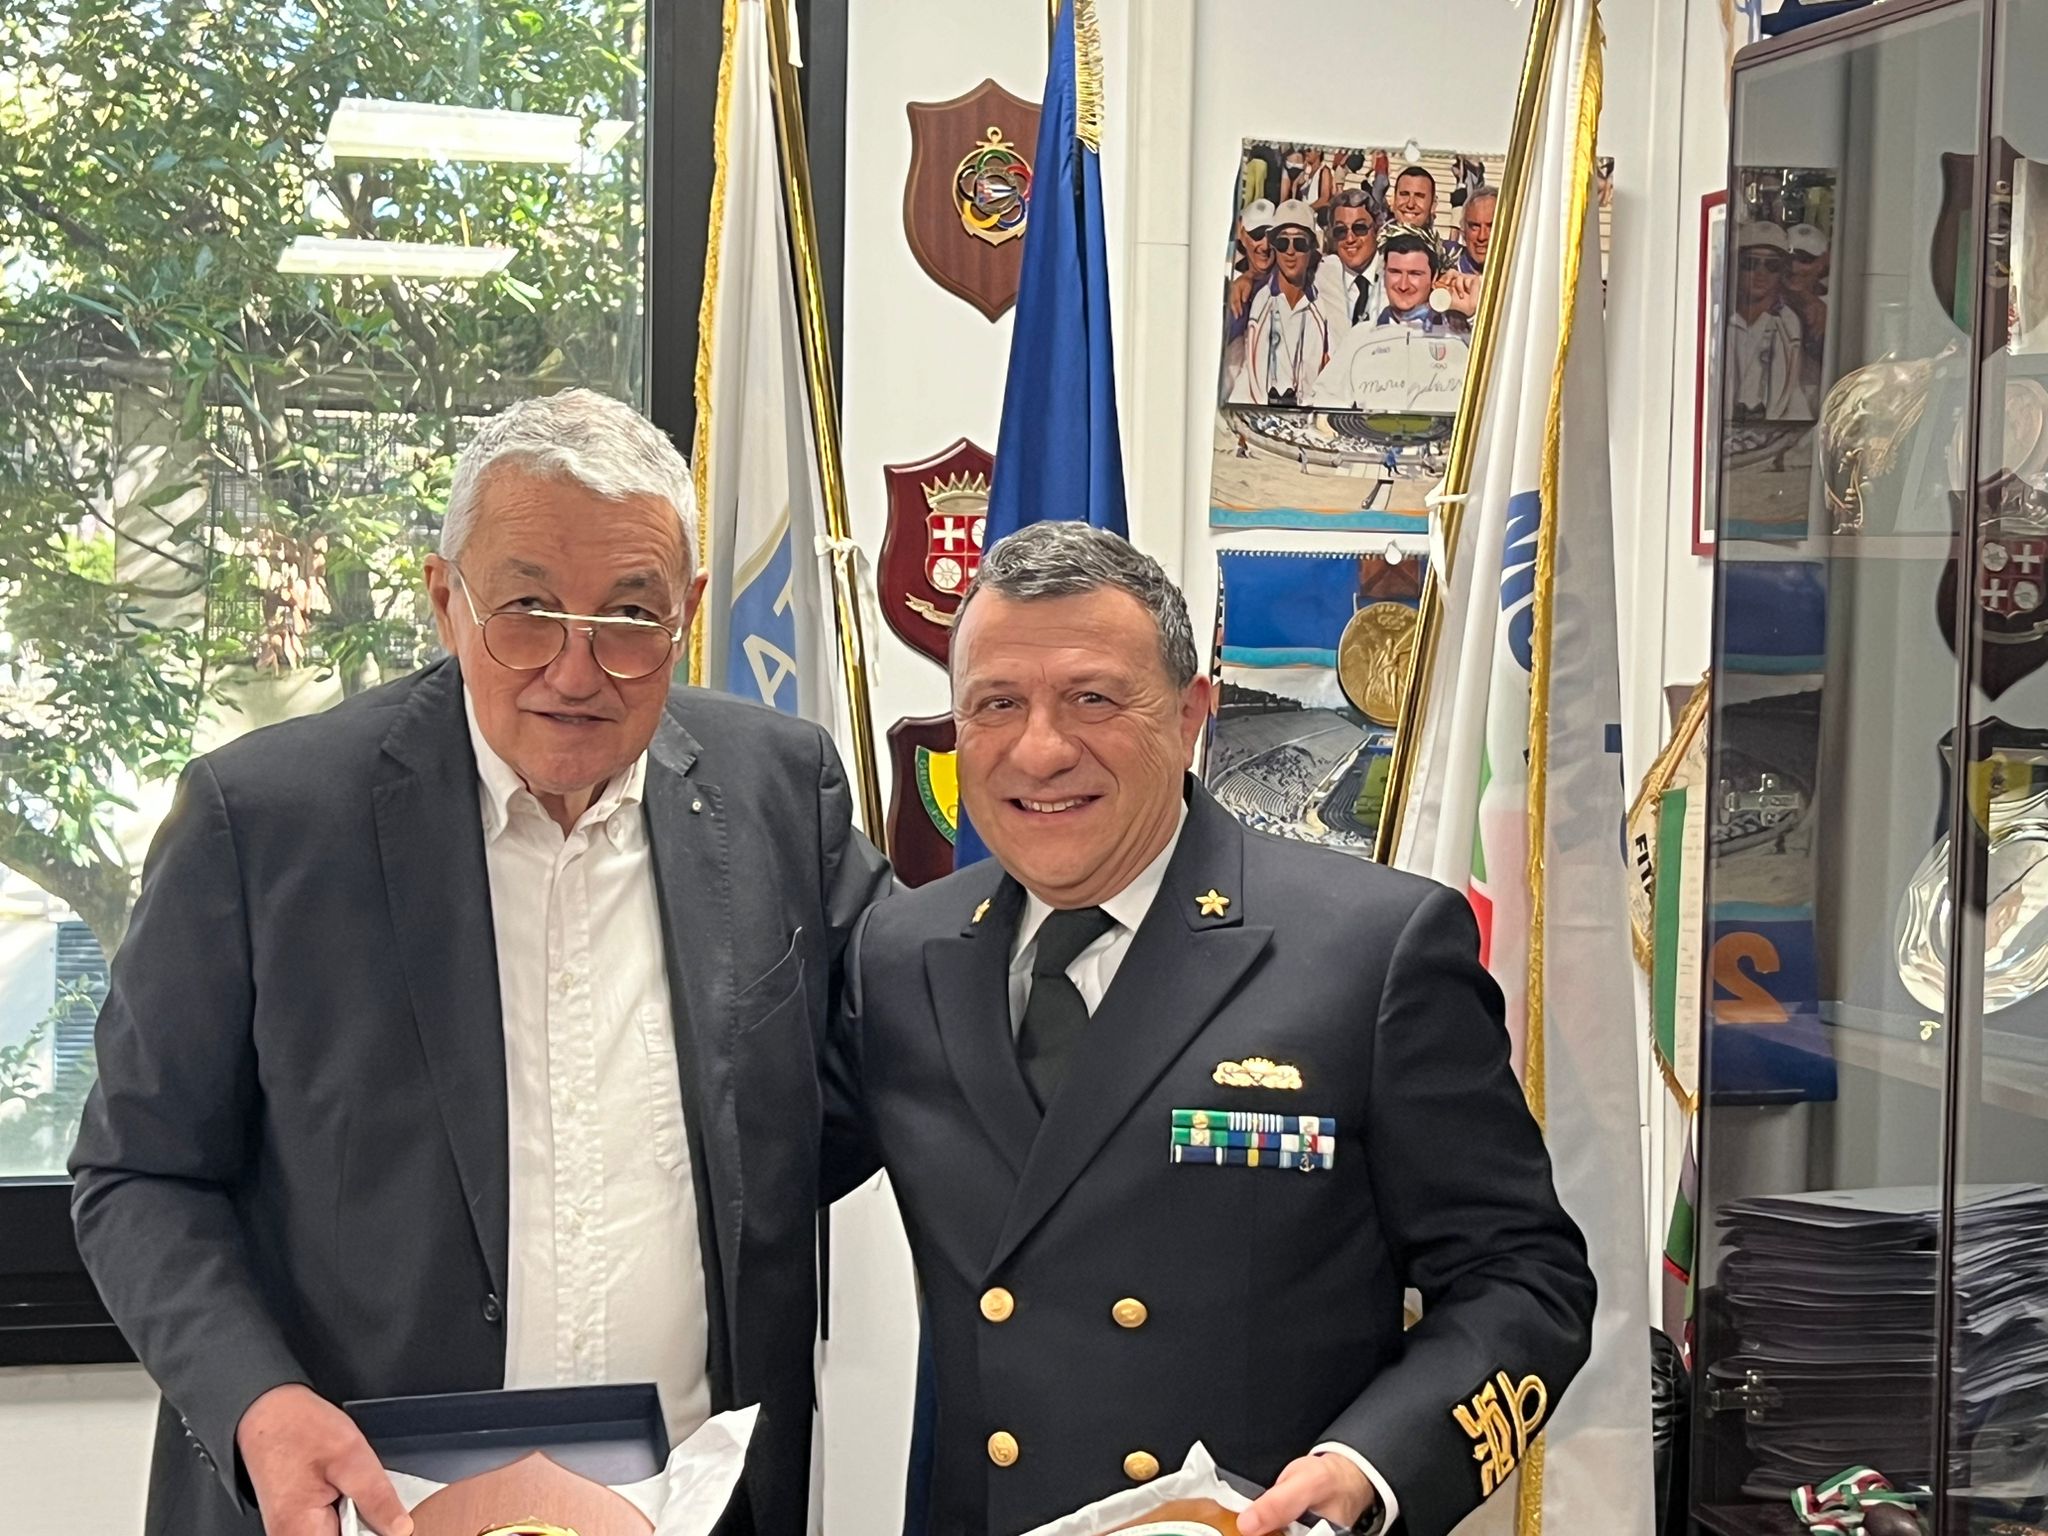 Fitarco e Marina Militare: il Presidente Scarzella incontra l'Ammiraglio La Faia